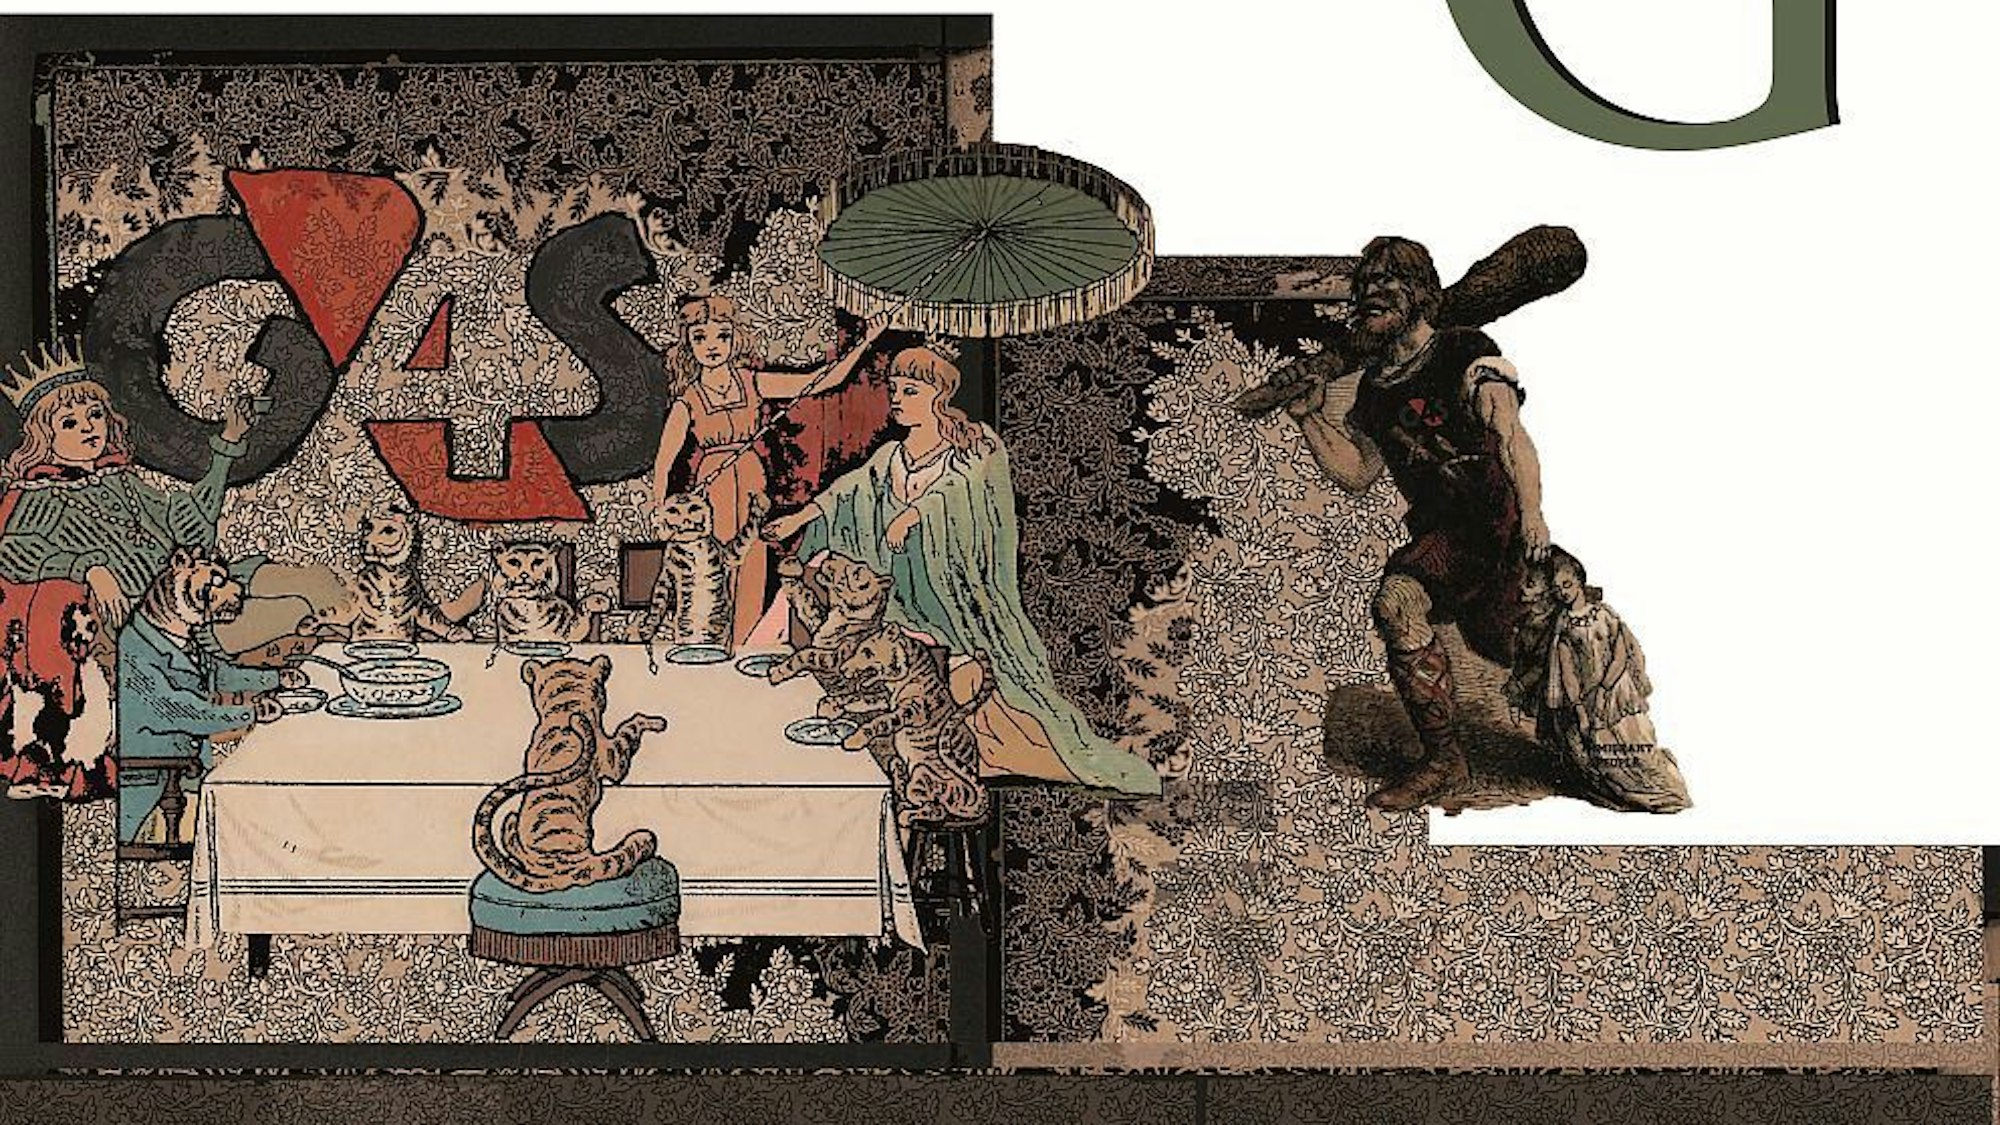 Eine Collage der Künstlerin Daniela Ortiz mit Menschen und Tigern am Esstisch.